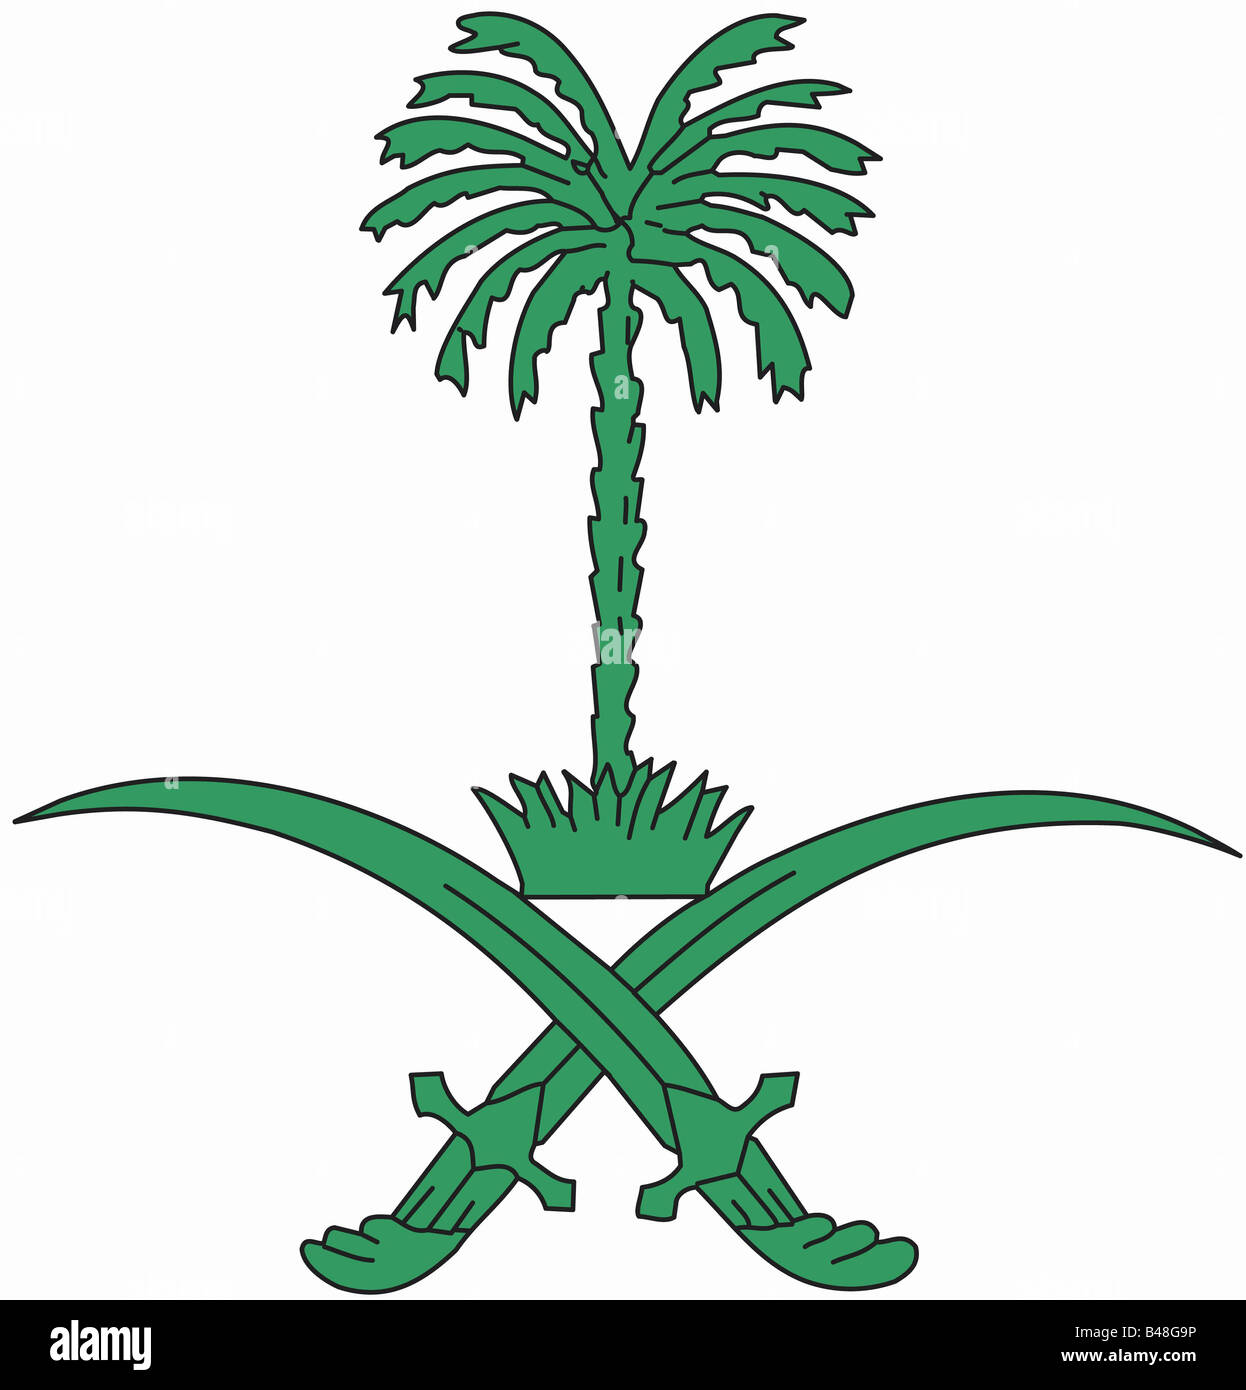 heraldry, coat of arms, Saudi Arabia, national coat of arms, symbol ...